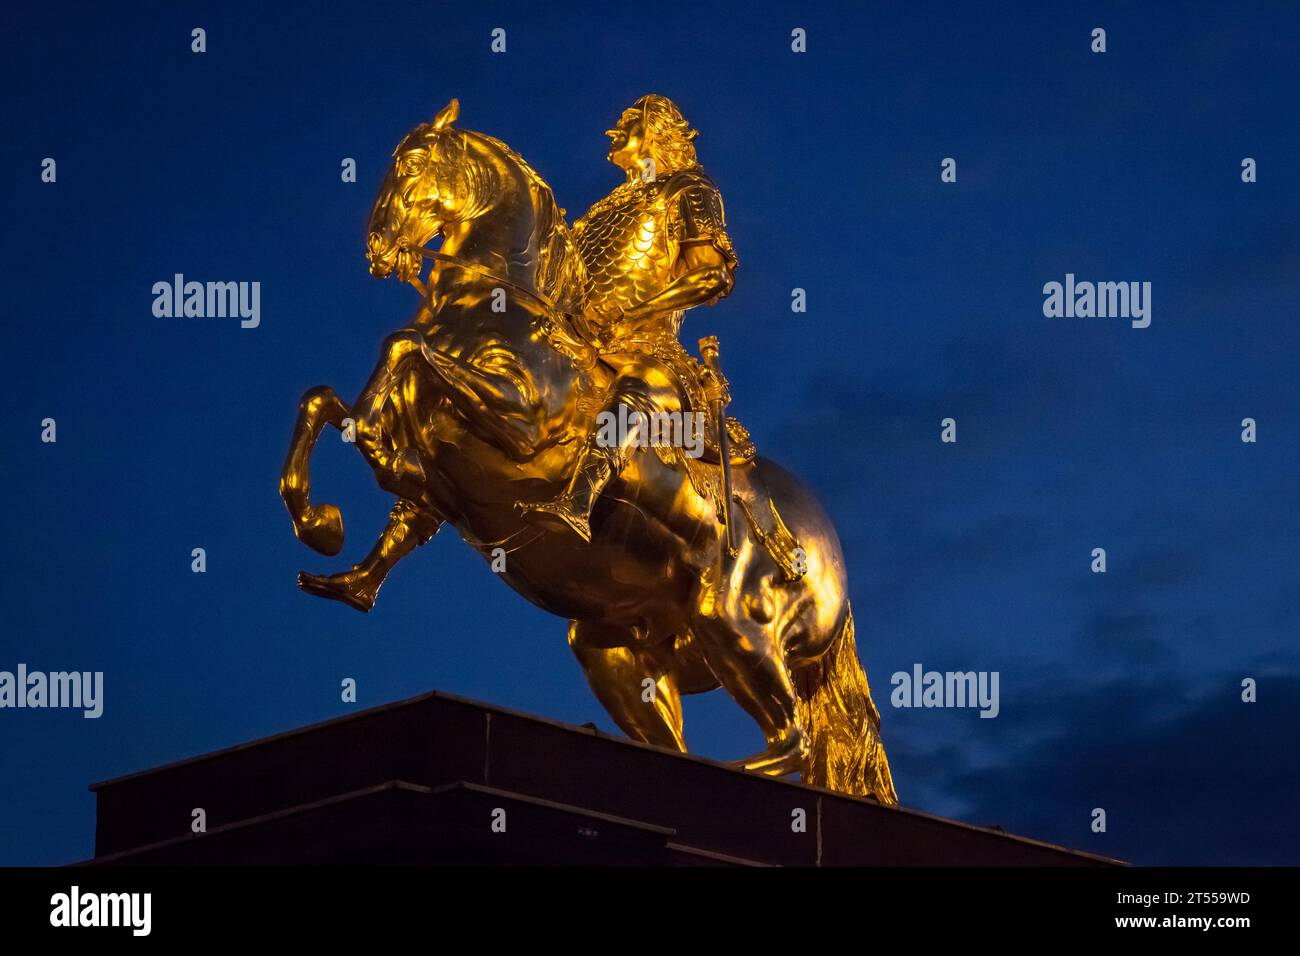 Vista notturna dall'angolo basso della statua equestre dorata "Goldener Reiter" (cavaliere d'oro) di Augusto il forte a Dresda Foto Stock